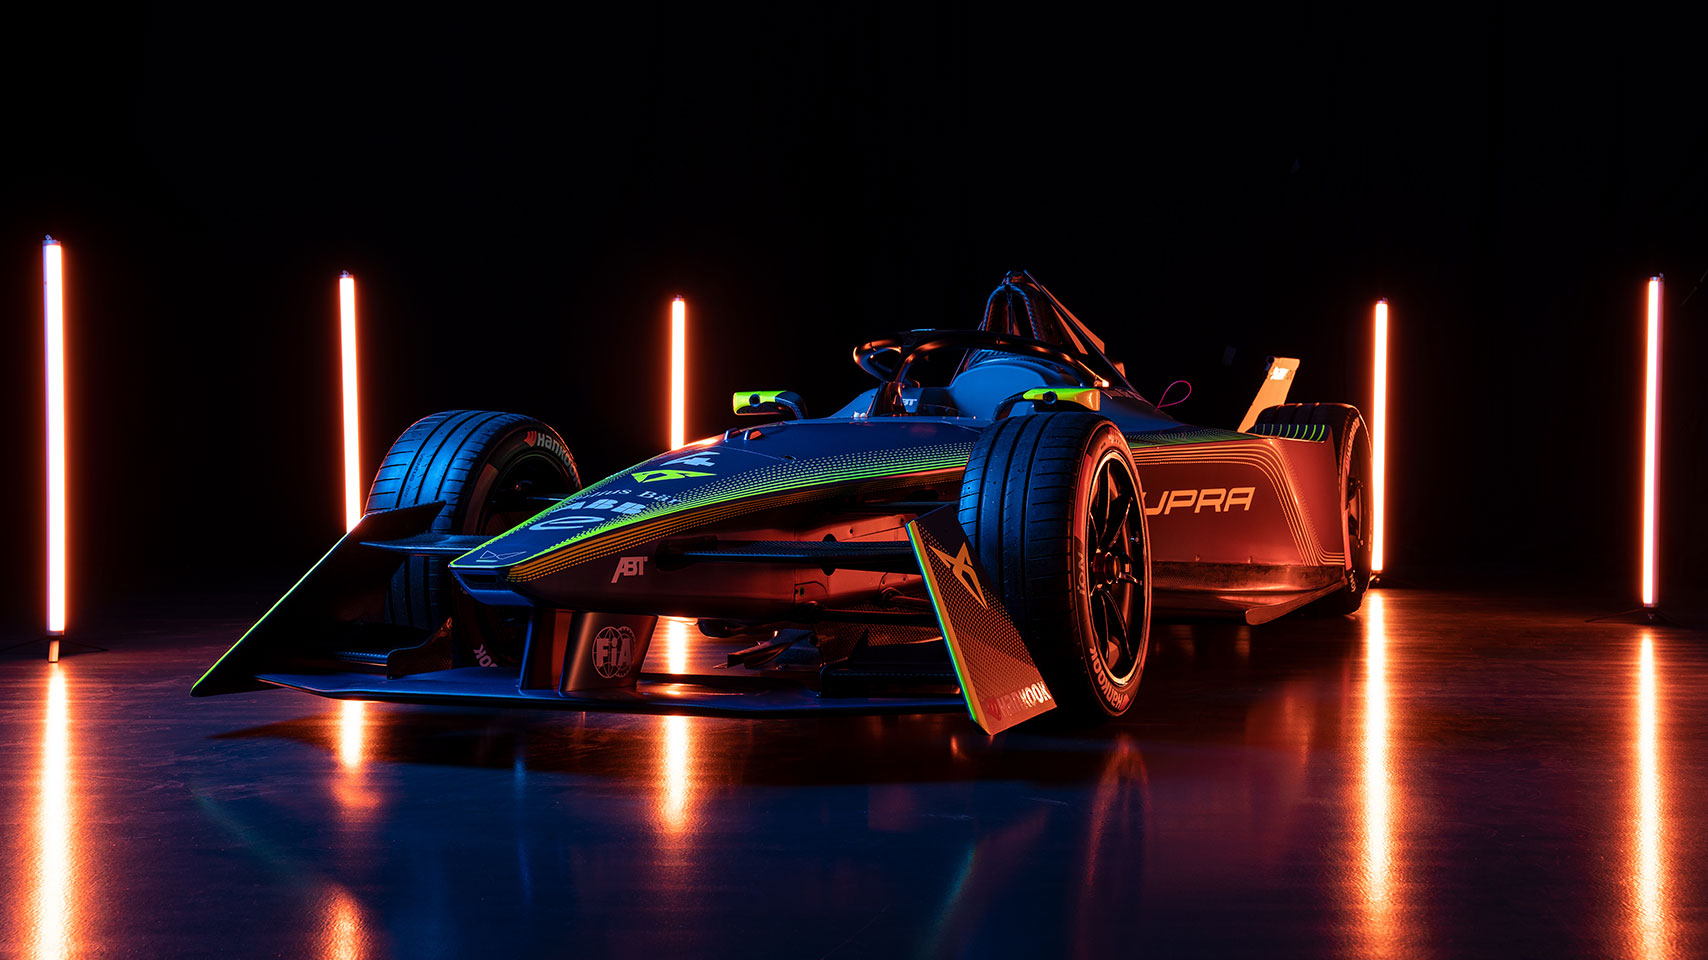 CUPRA refuerza su apuesta por la competencia de vehículos eléctricos uniéndose a ABT para competir en Fórmula E